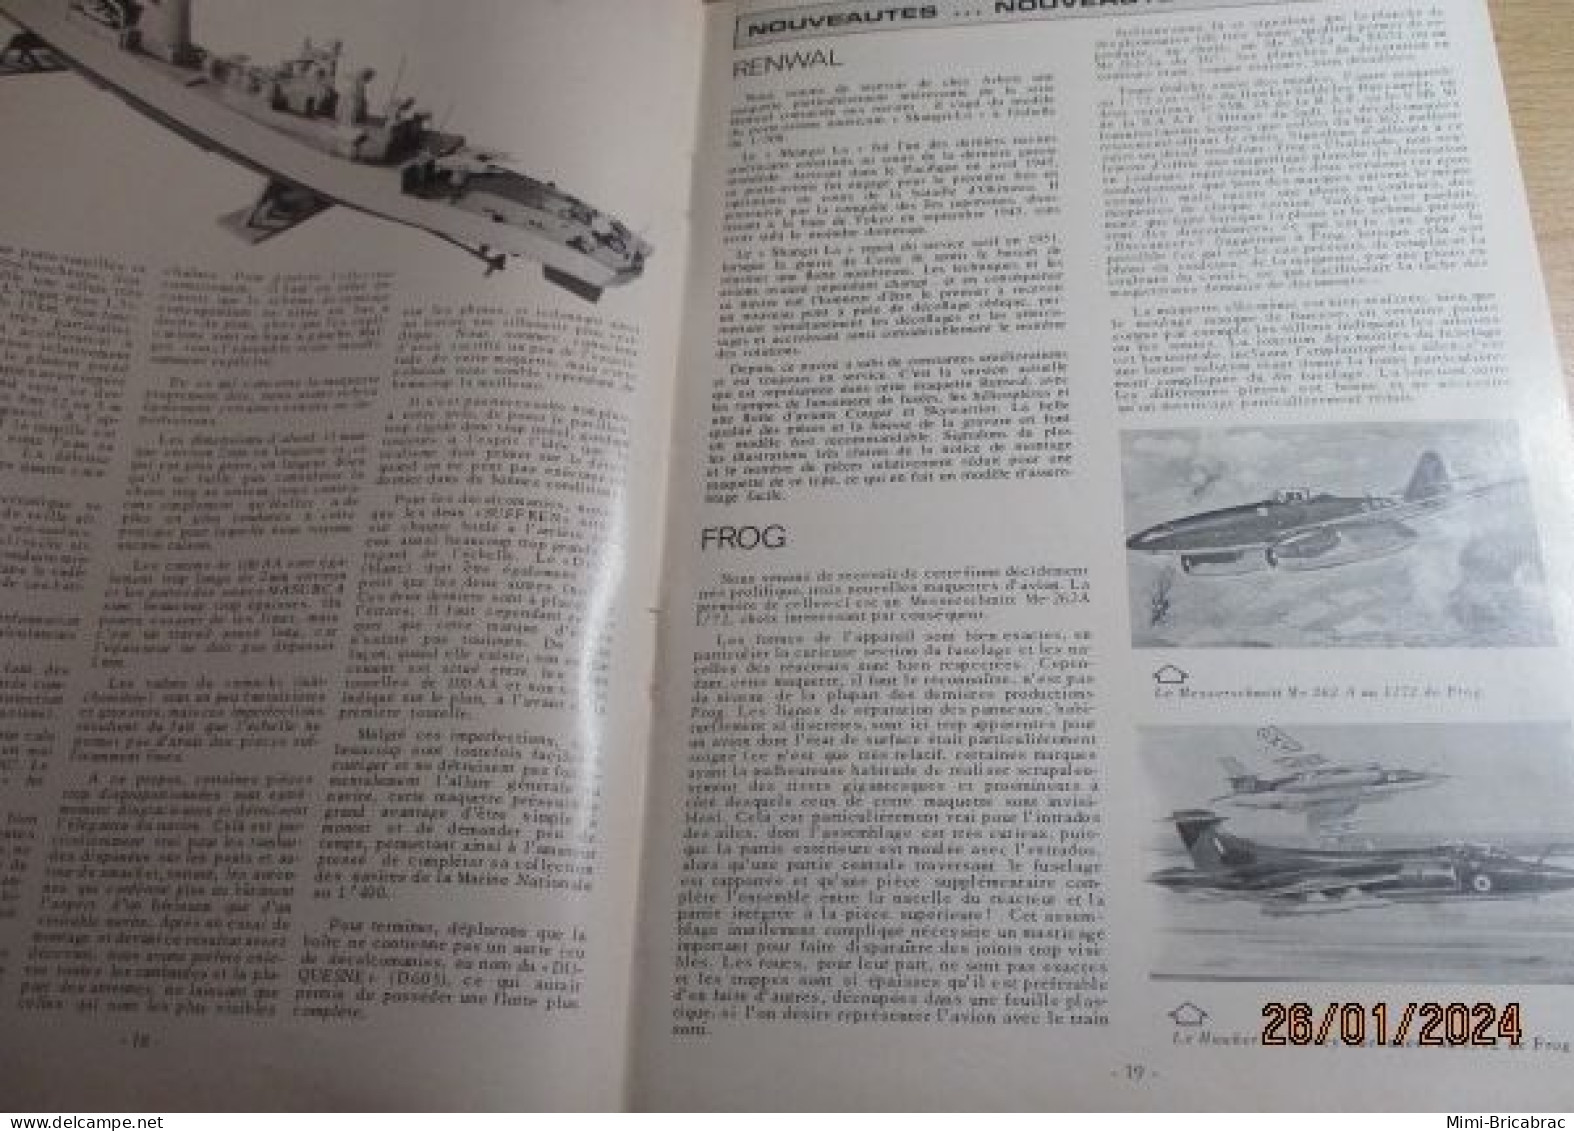 CAGI 1e Revue de maquettisme plastique années 60/70 : MPM n°22 de 1972 très bon état ! Sommaire en photo 2 ou 3